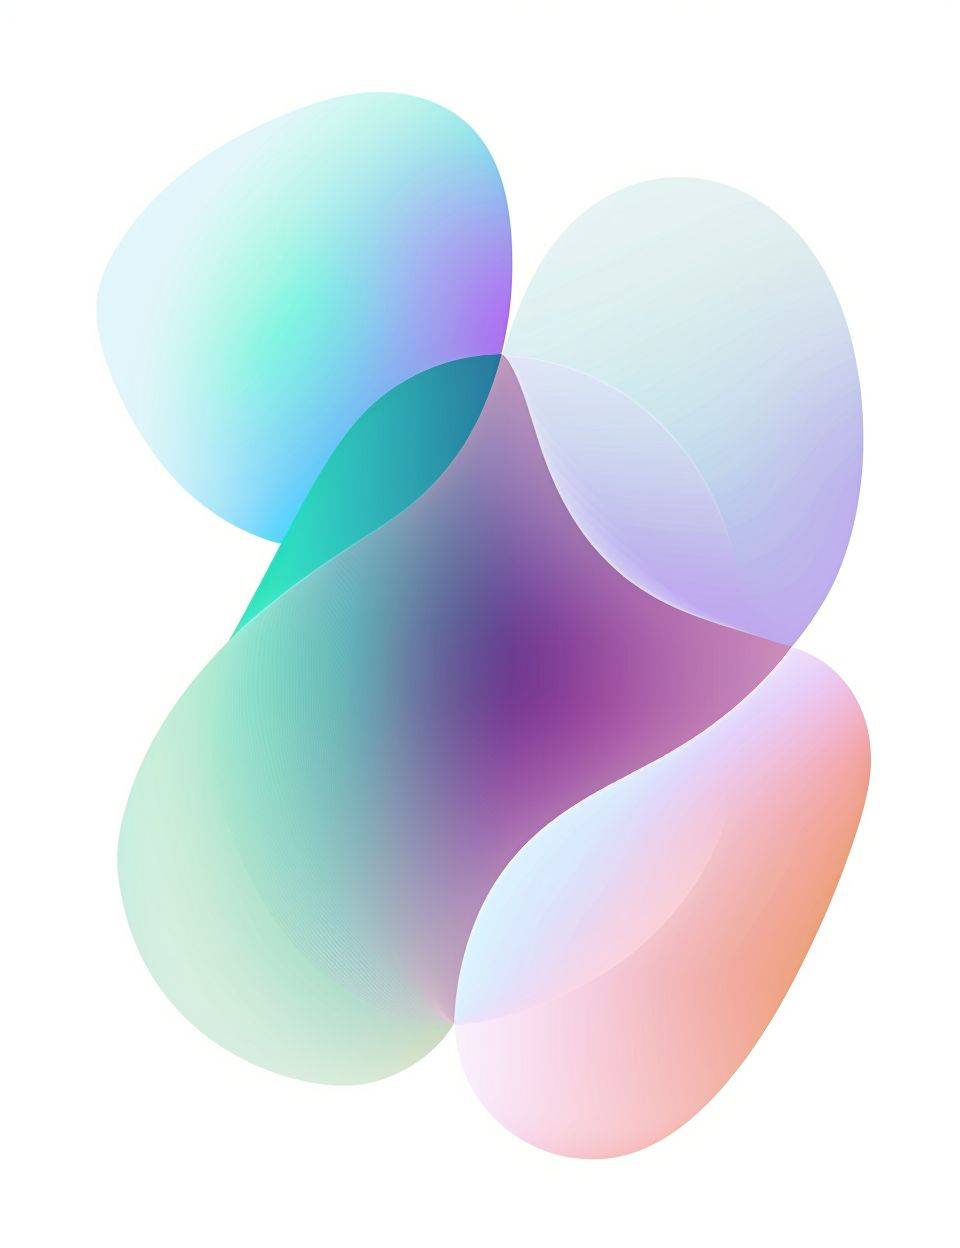 パステルカラーの抽象的なベクトル形状を使用し、Glowing Holographic Gradientのために洗練されたモダンなロゴを作成します。デザインには、パープル、ブルー、ピンク、グリーンの滑らかなグラデーションが特徴で、柔らかく華やかな外観を与えます。流れるような動きを暗示する大きく丸みを帯びた形状が取り入れられており、一方で「bi compilation」のスタイルの控えめなテキストが添えられています。この構図はシンプルさとカラーバイブランシーの間に調和の取れたバランスを生み出しており、ブランド名としてのシンボルとして適しています。